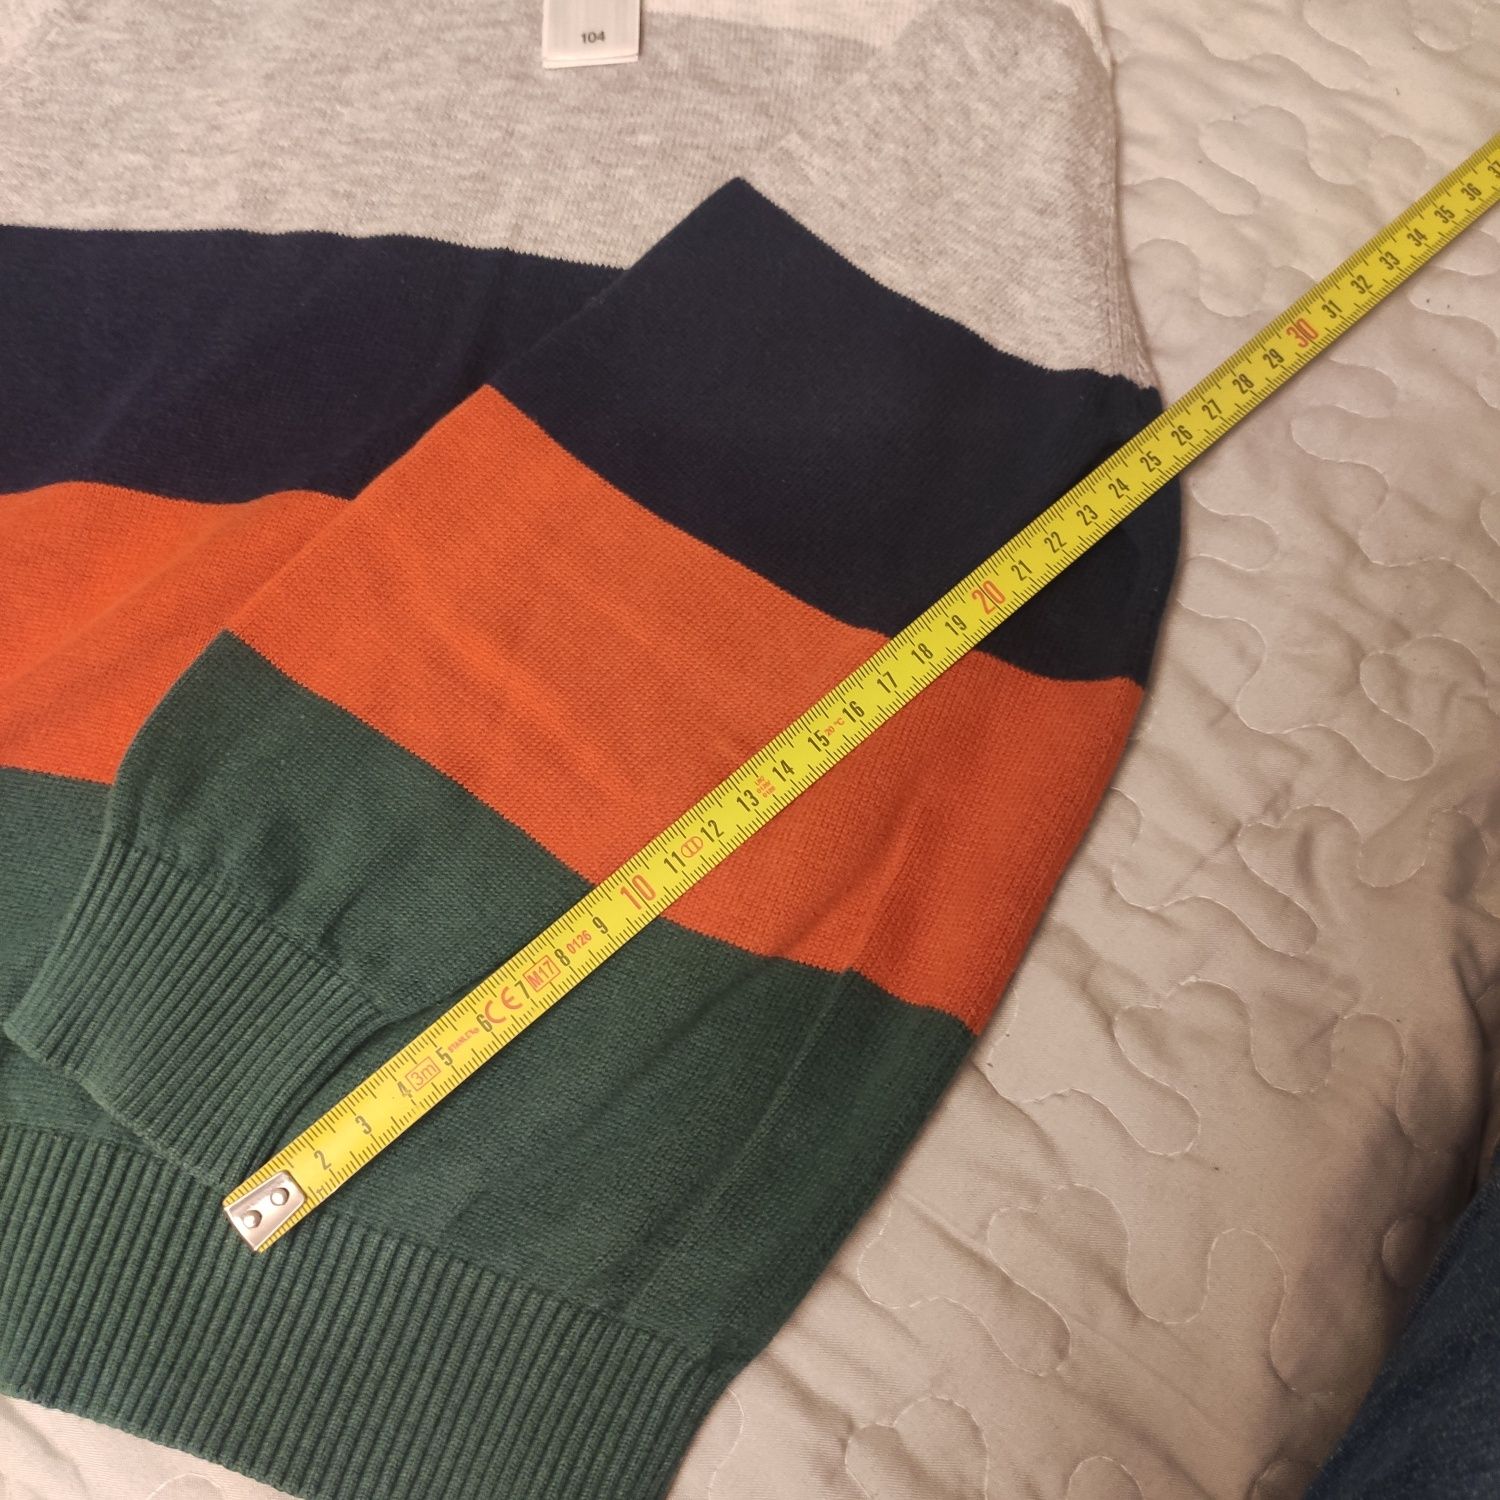 Sweterek dla chłopca w rozmiarze 104 firmy C&A